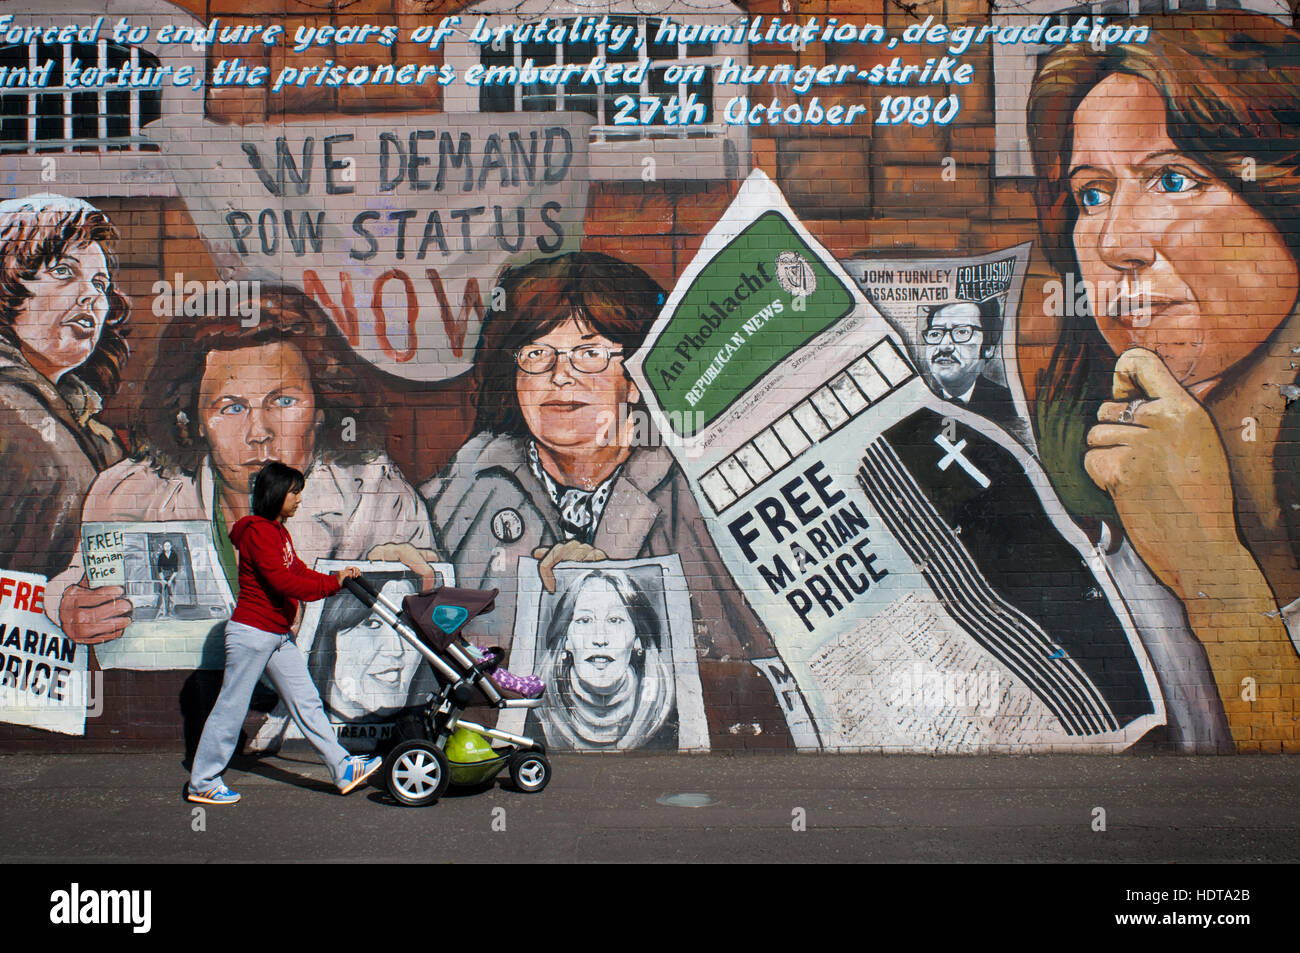 Marian libre : mur dans Falls road Street, Belfast, Irlande du Nord, Royaume-Uni. Nous exigeons maintenant du statut de prisonniers. "Forcé à endurer des années de brutalité, humiliatio Banque D'Images